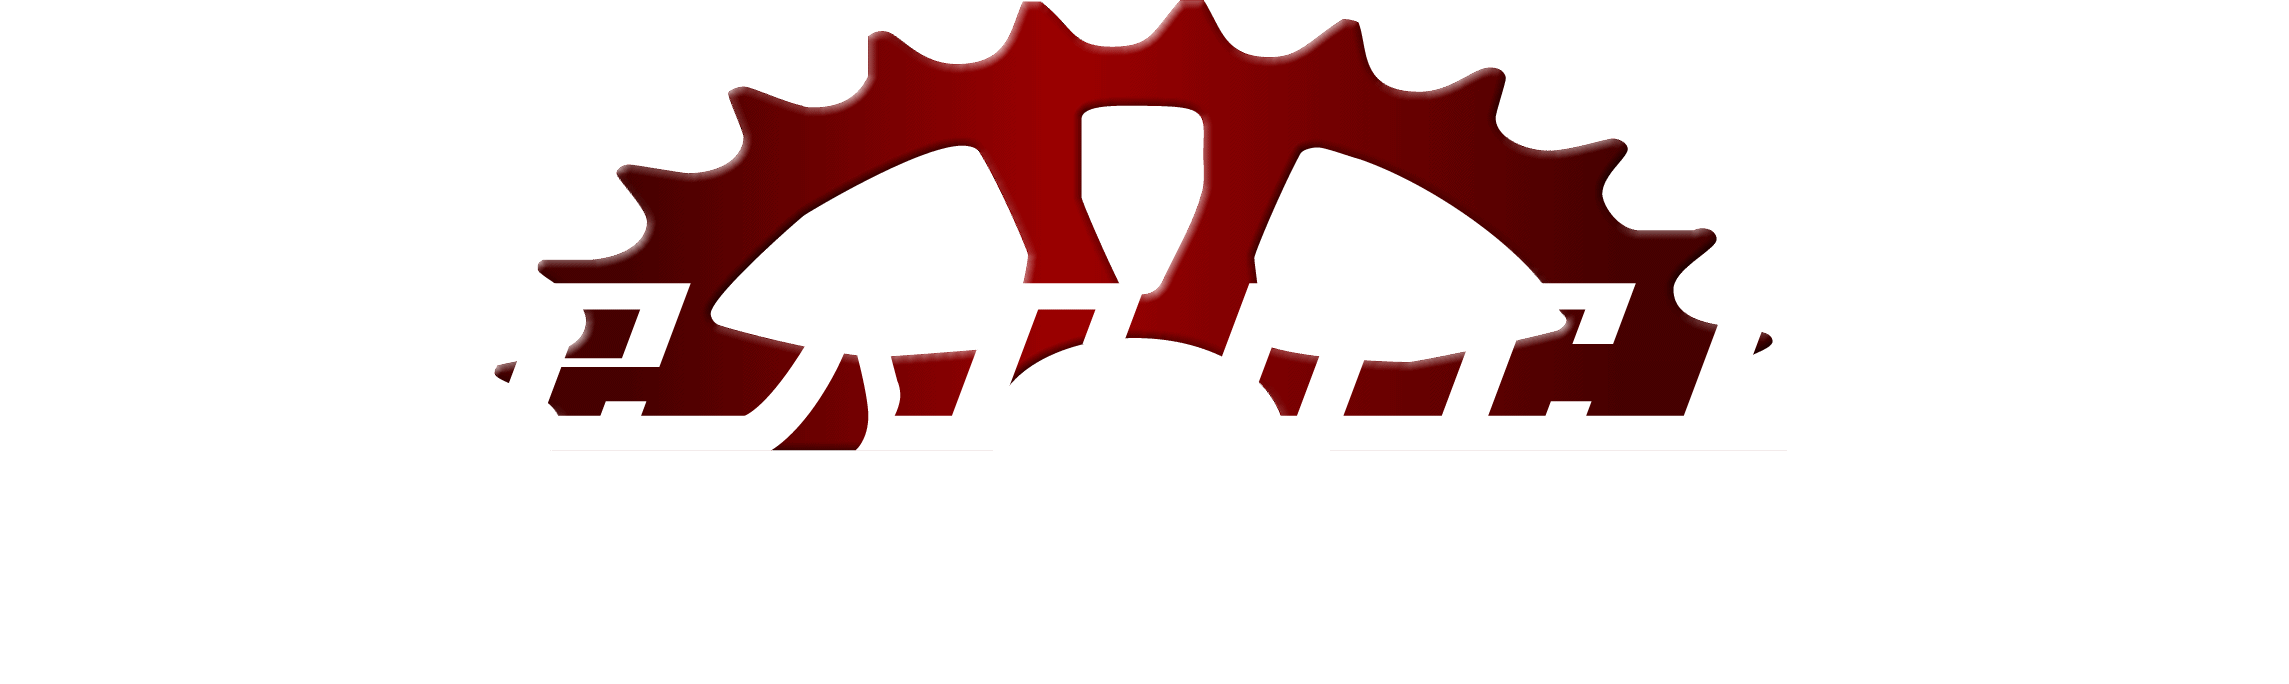 Dees Cycles, Amersham logo